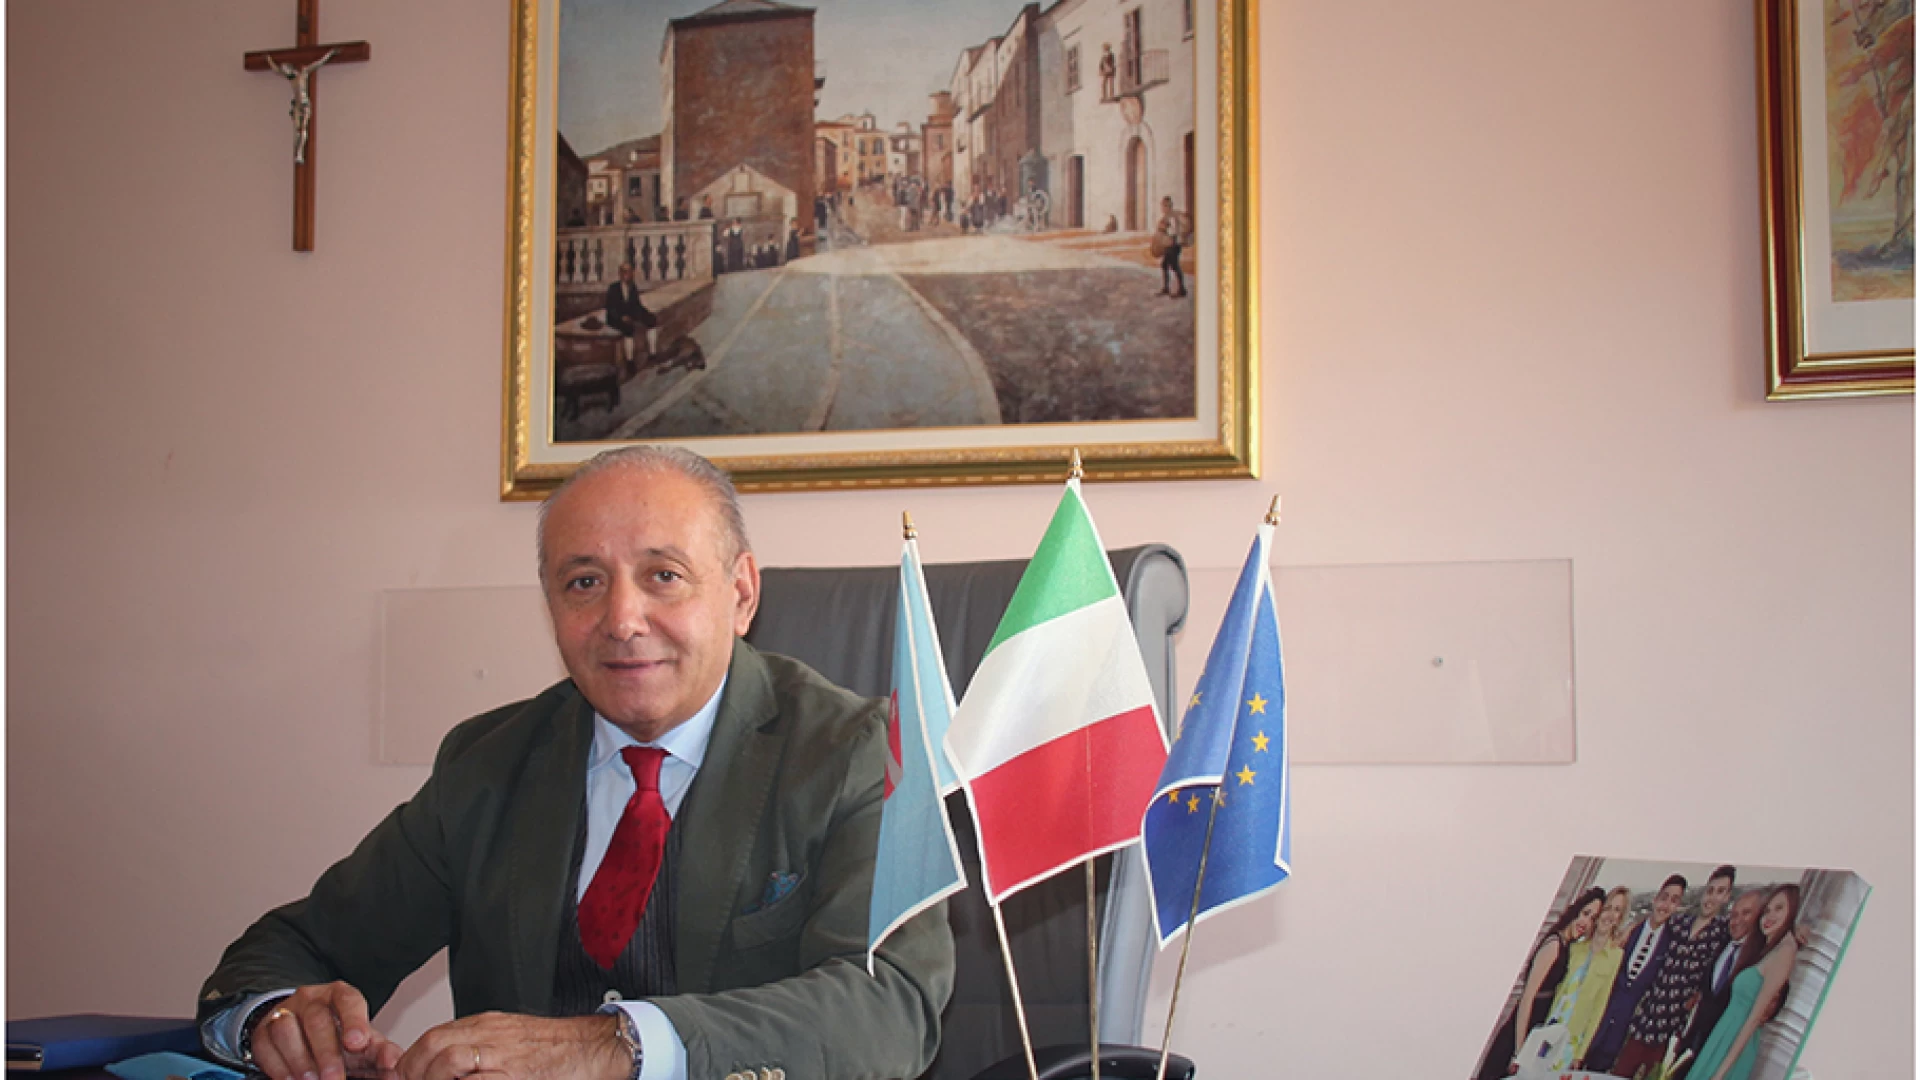 Il Consiglio regionale approva il piano regolatore del porto di Termoli. Nico Romagnuolo: “Un punto di svolta per lo sviluppo”.